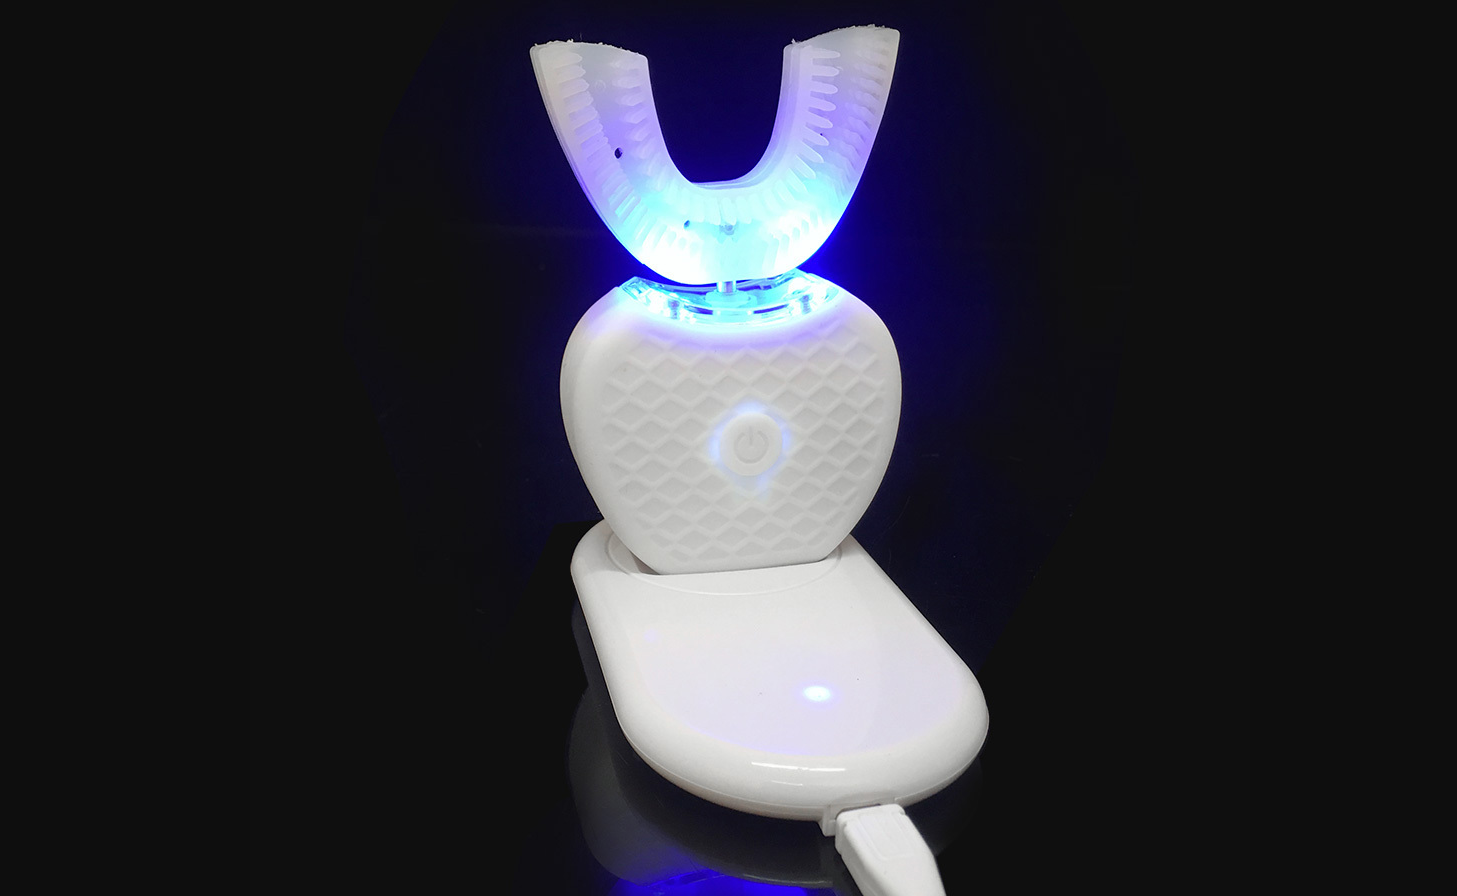 AZDENT 360: ультразвукова зубна щітка, яку не потрібно тримати в руках